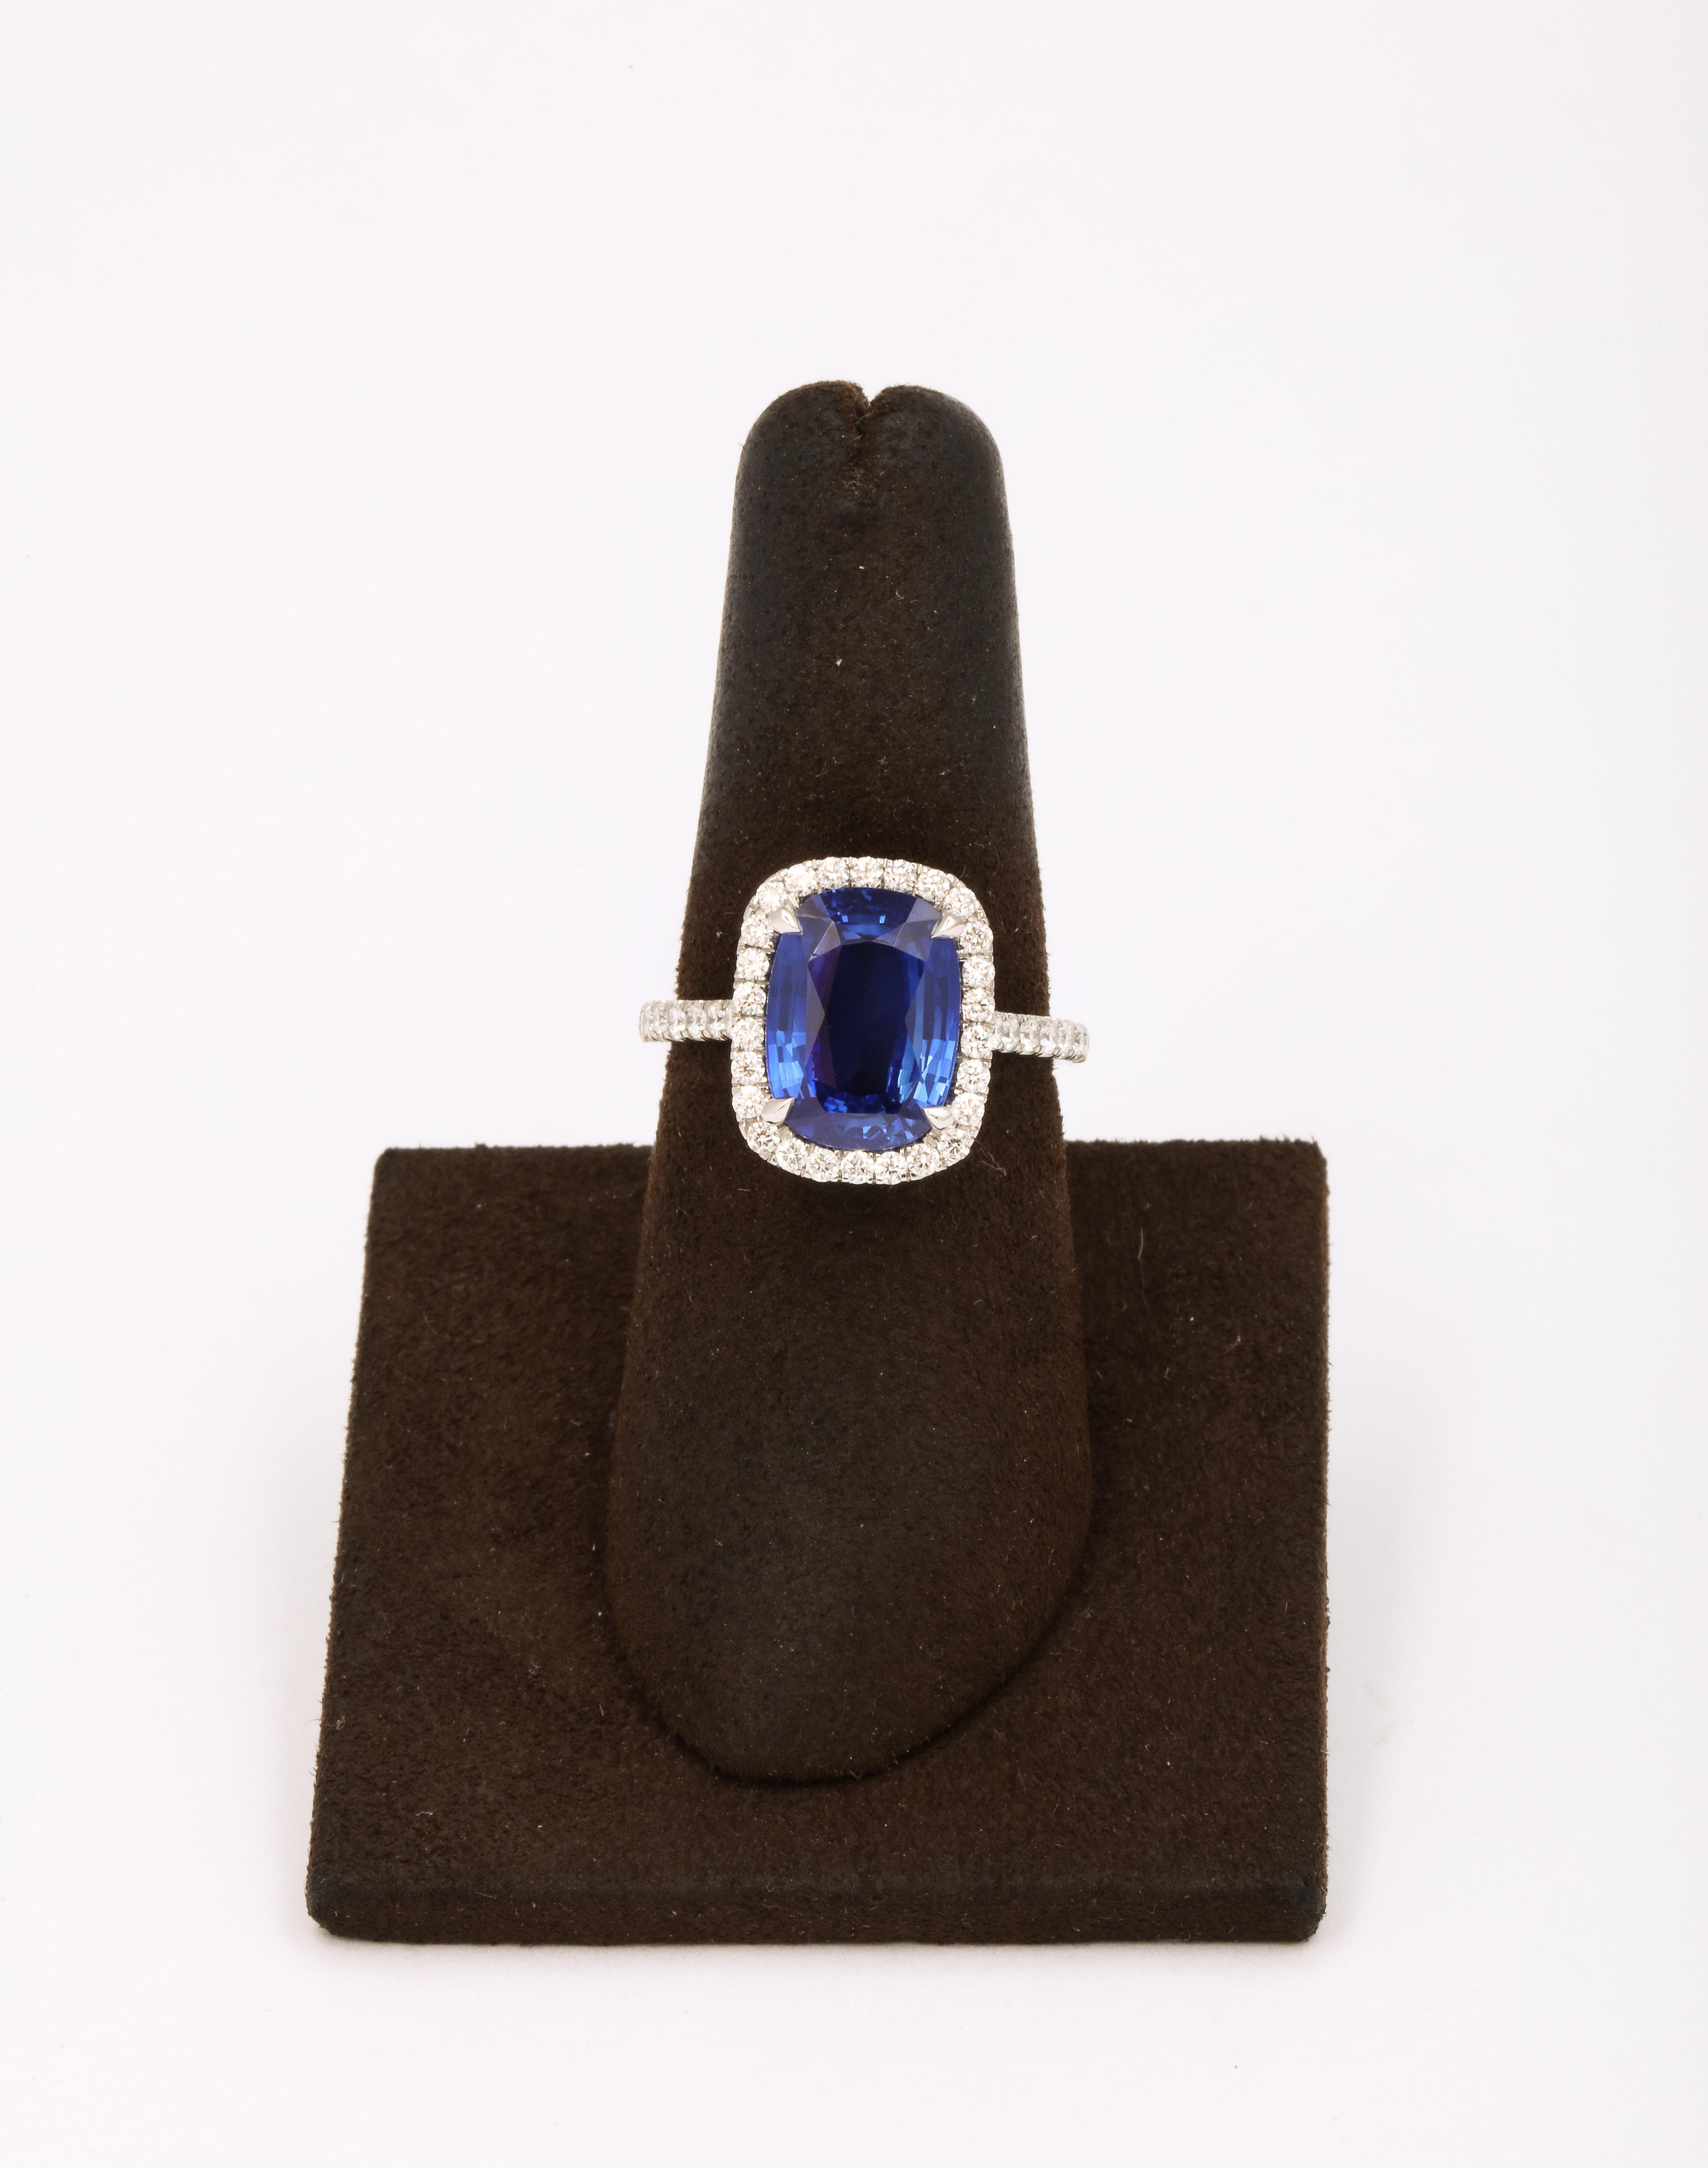 
Une pierre fabuleuse en forme de coussin allongé, la plus recherchée ! 

Saphir bleu de Ceylan de 4,71 carats 

.78 carats de diamants blancs 

Serti dans un halo de diamants en platine fait sur mesure. 

Actuellement de taille 6.5, cette bague